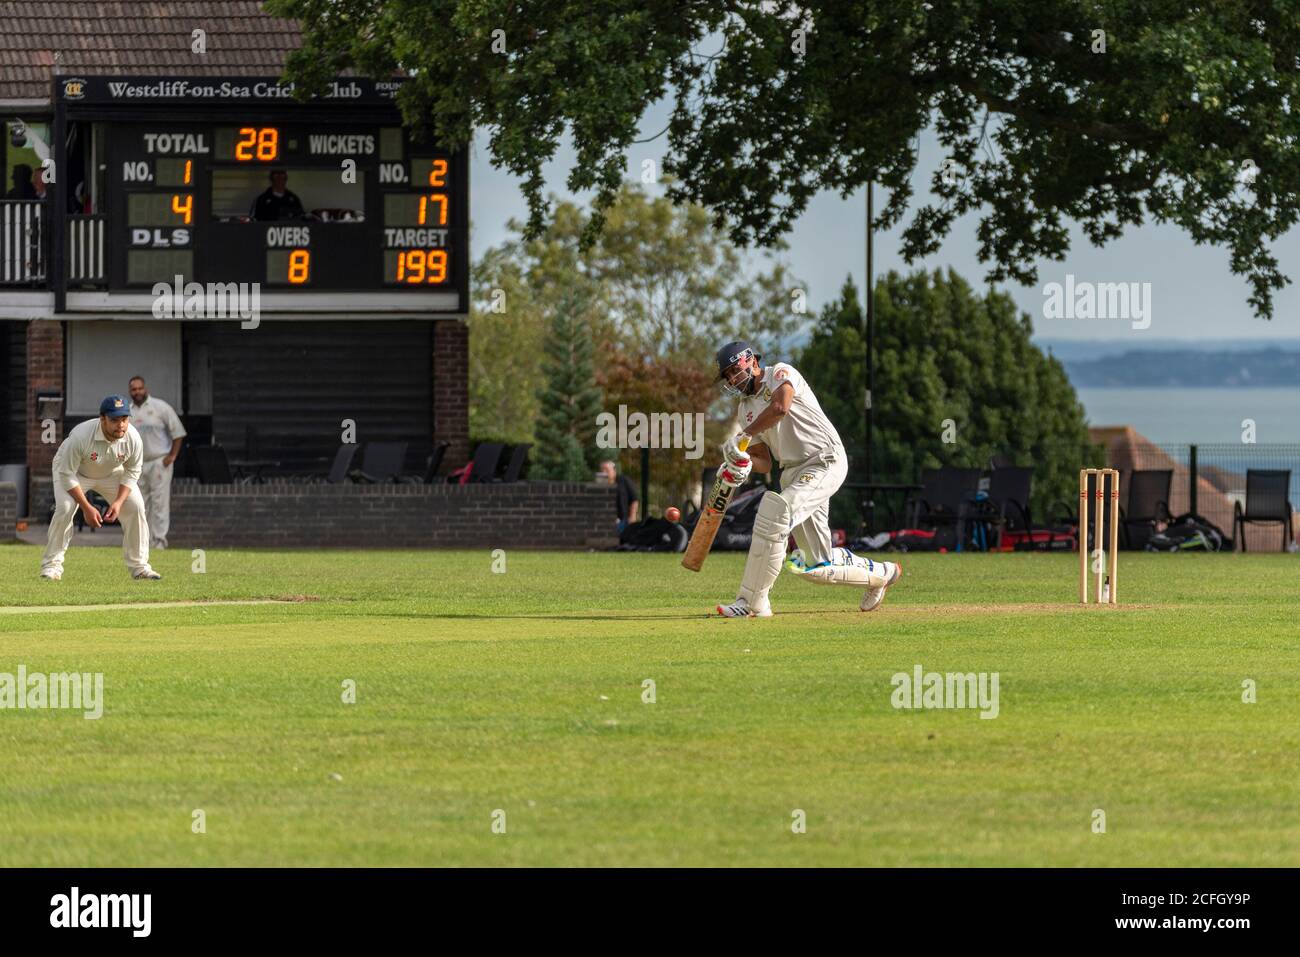 Le cricket se joue à Chalkwell Park, Westcliff on Sea, Southend, Essex, Royaume-Uni. Batteur du club de cricket de Westcliff on Sea. Pavillon, tableau de bord Banque D'Images